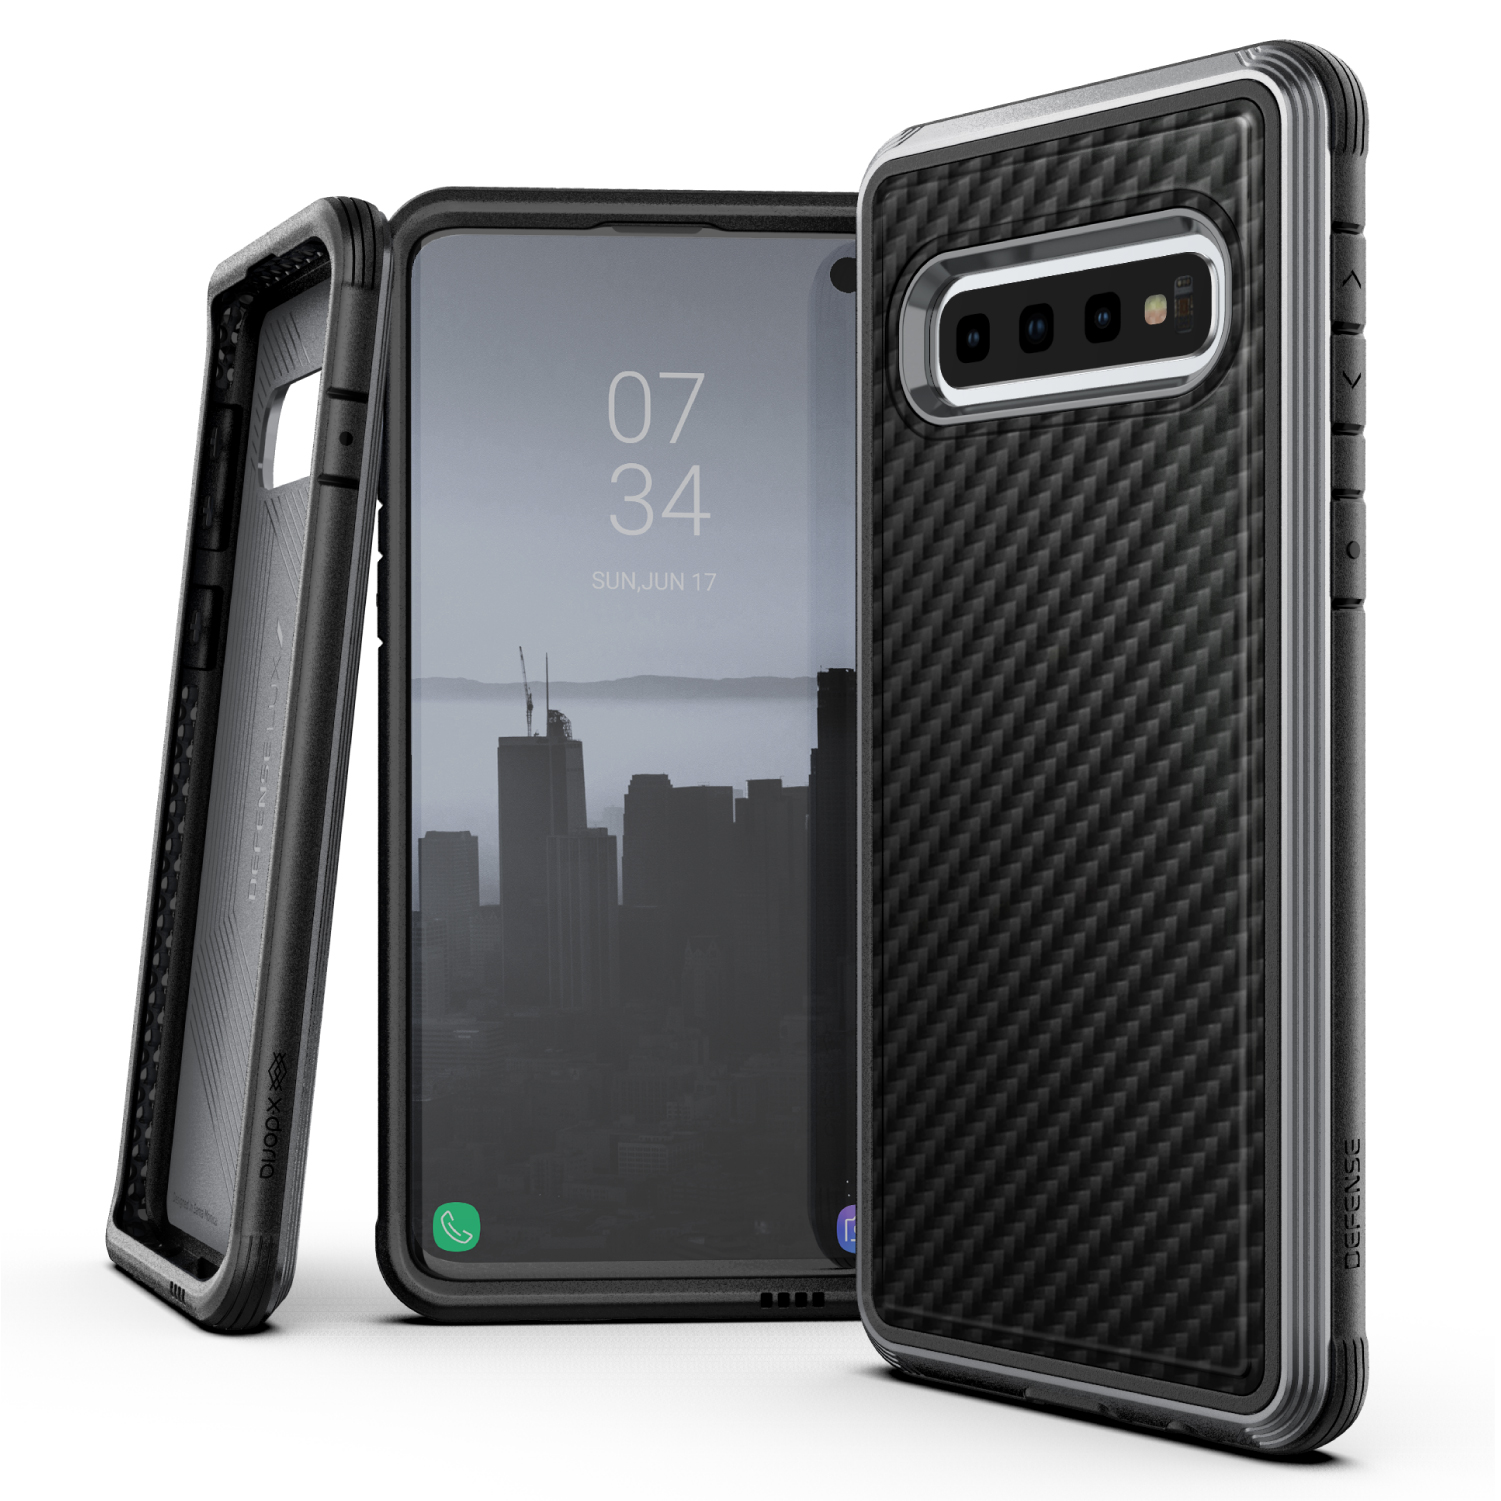 Samsung Galaxy S10, case Defense Lux, black carbon fiber